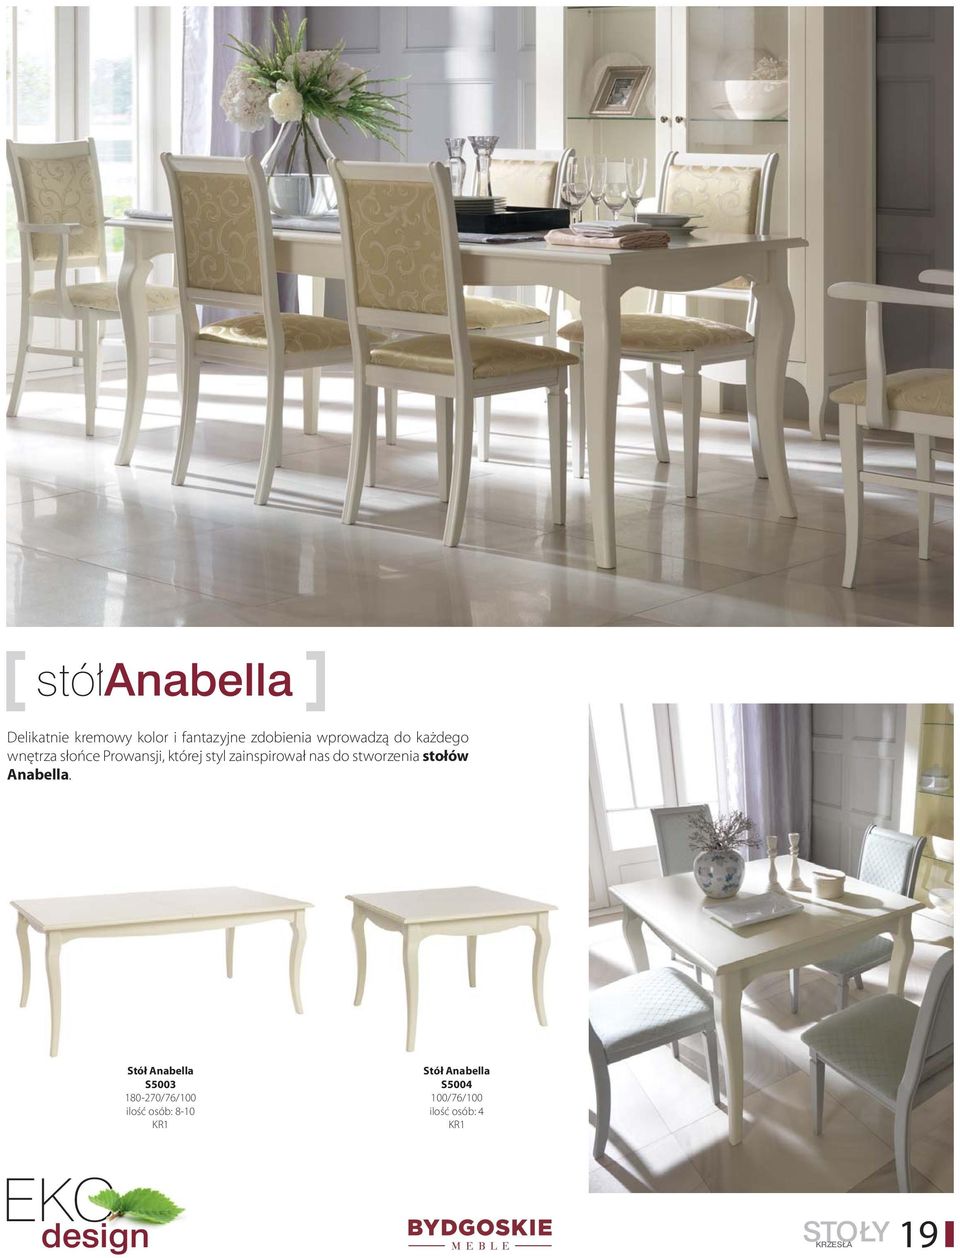 stworzenia stołów Anabella.